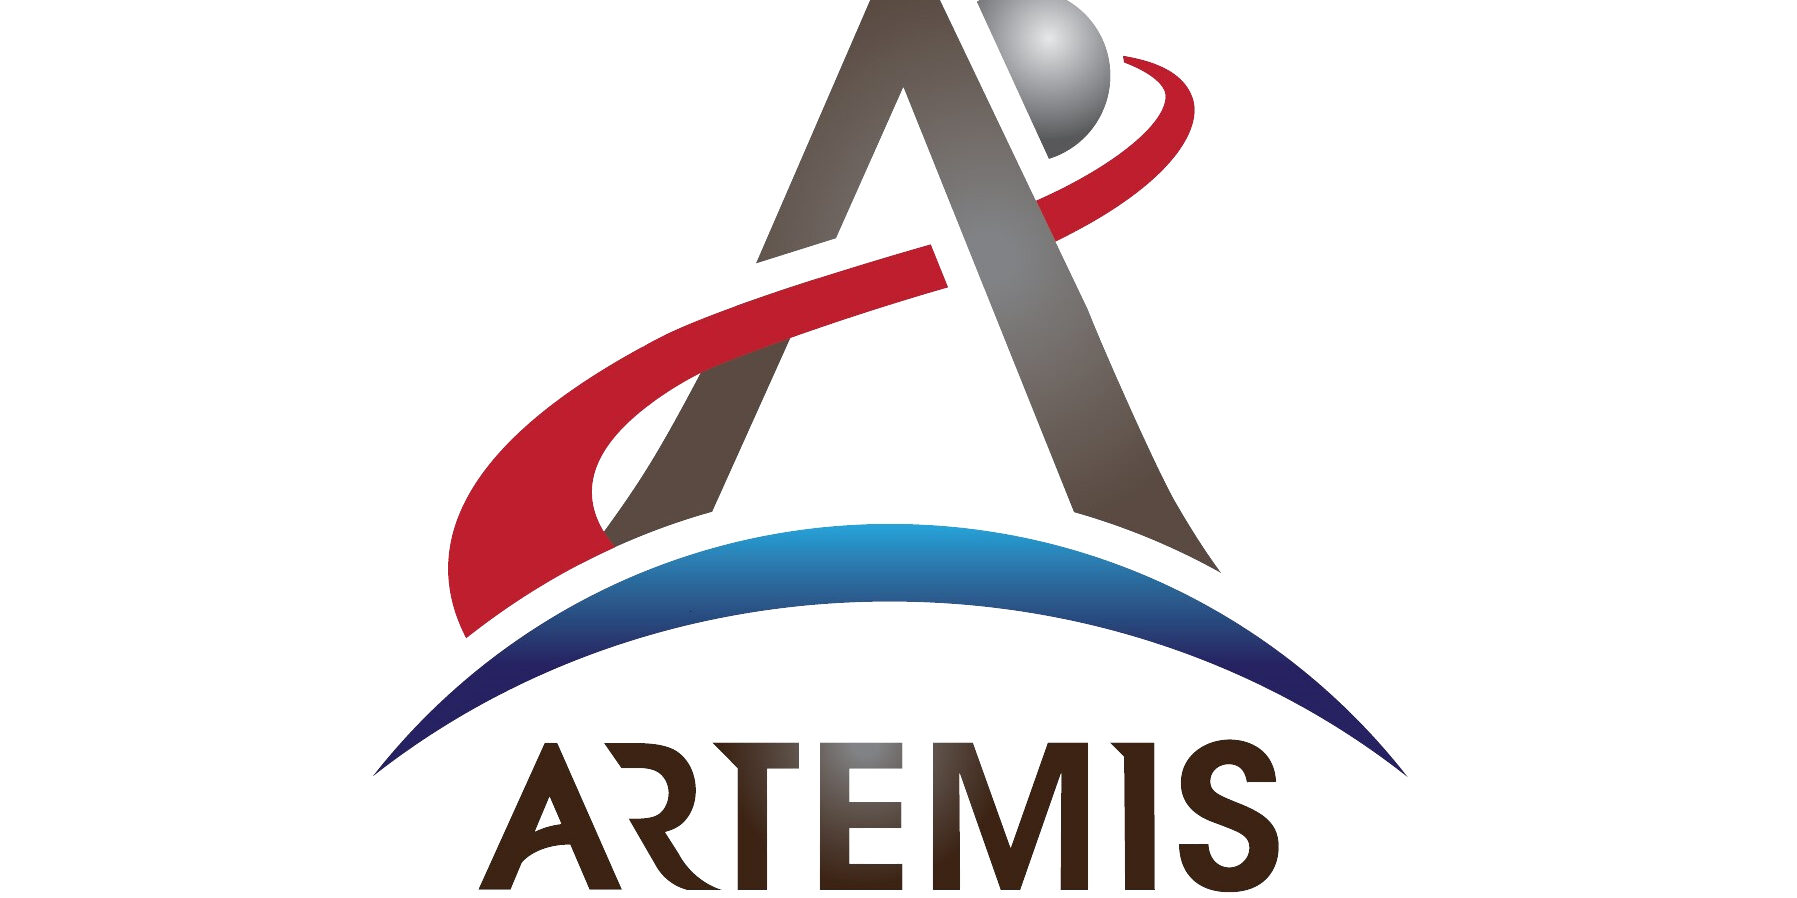 Artemis-programma: Terugkeer van de mens naar de maan